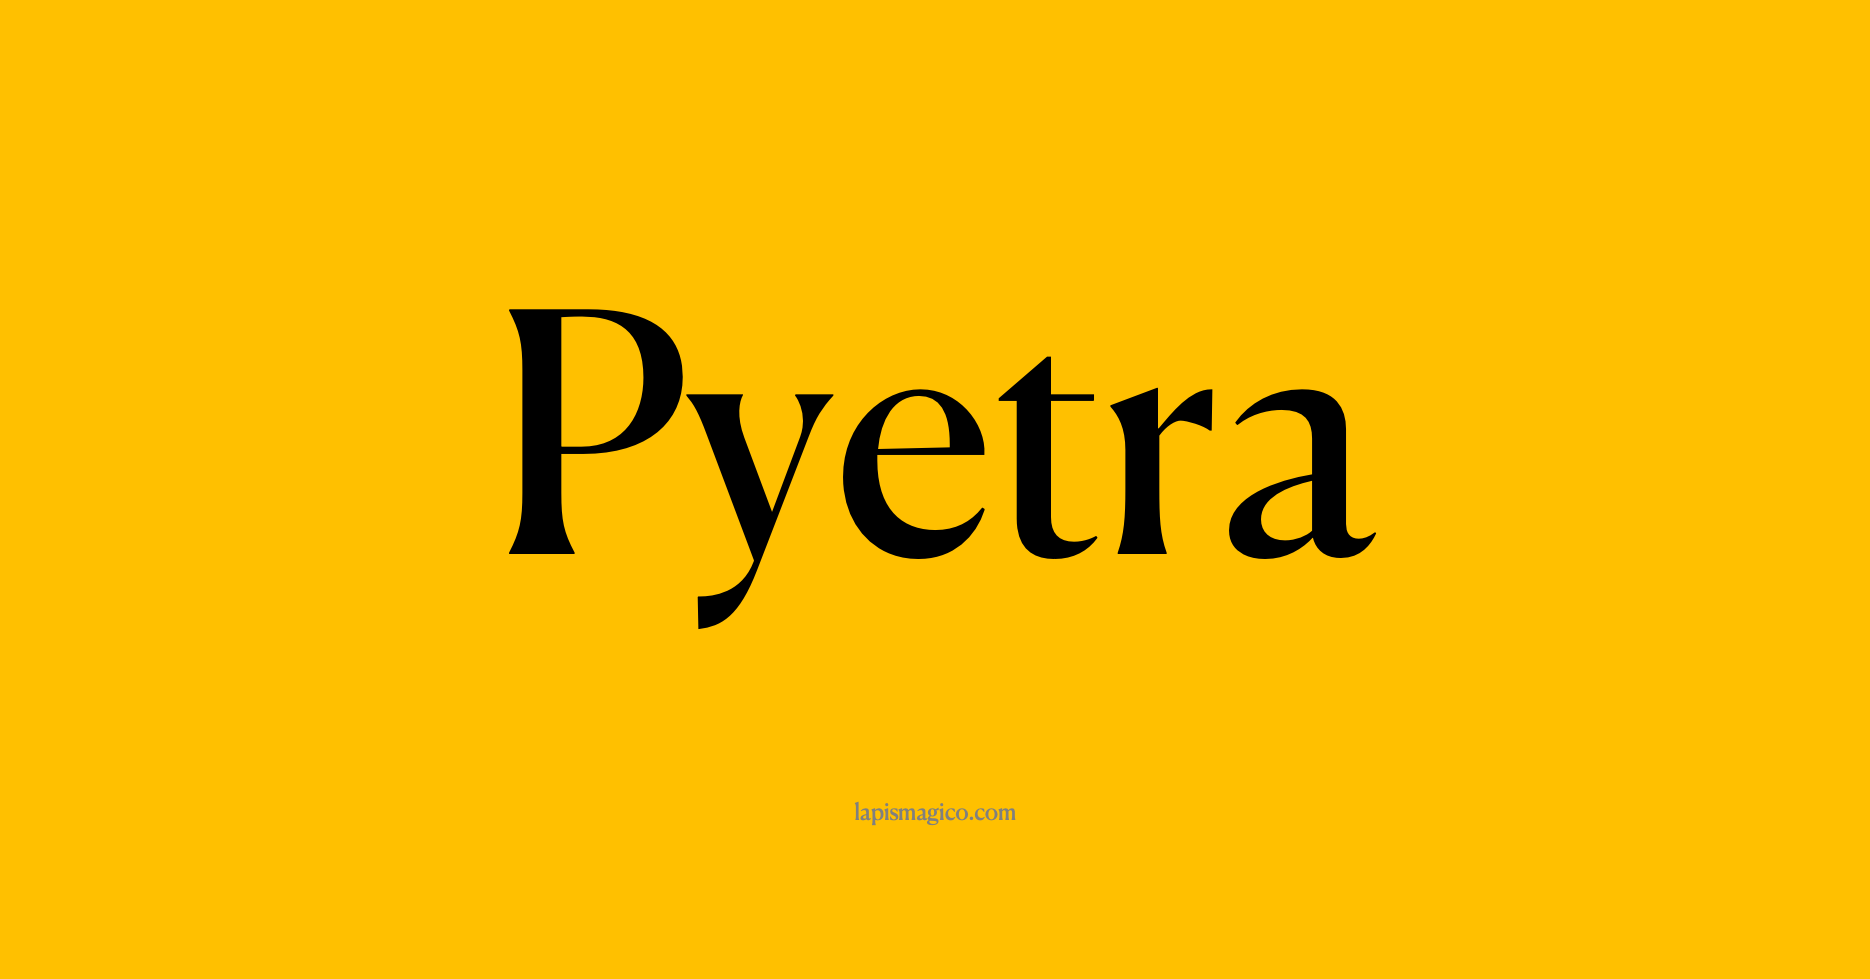 Nome Pyetra